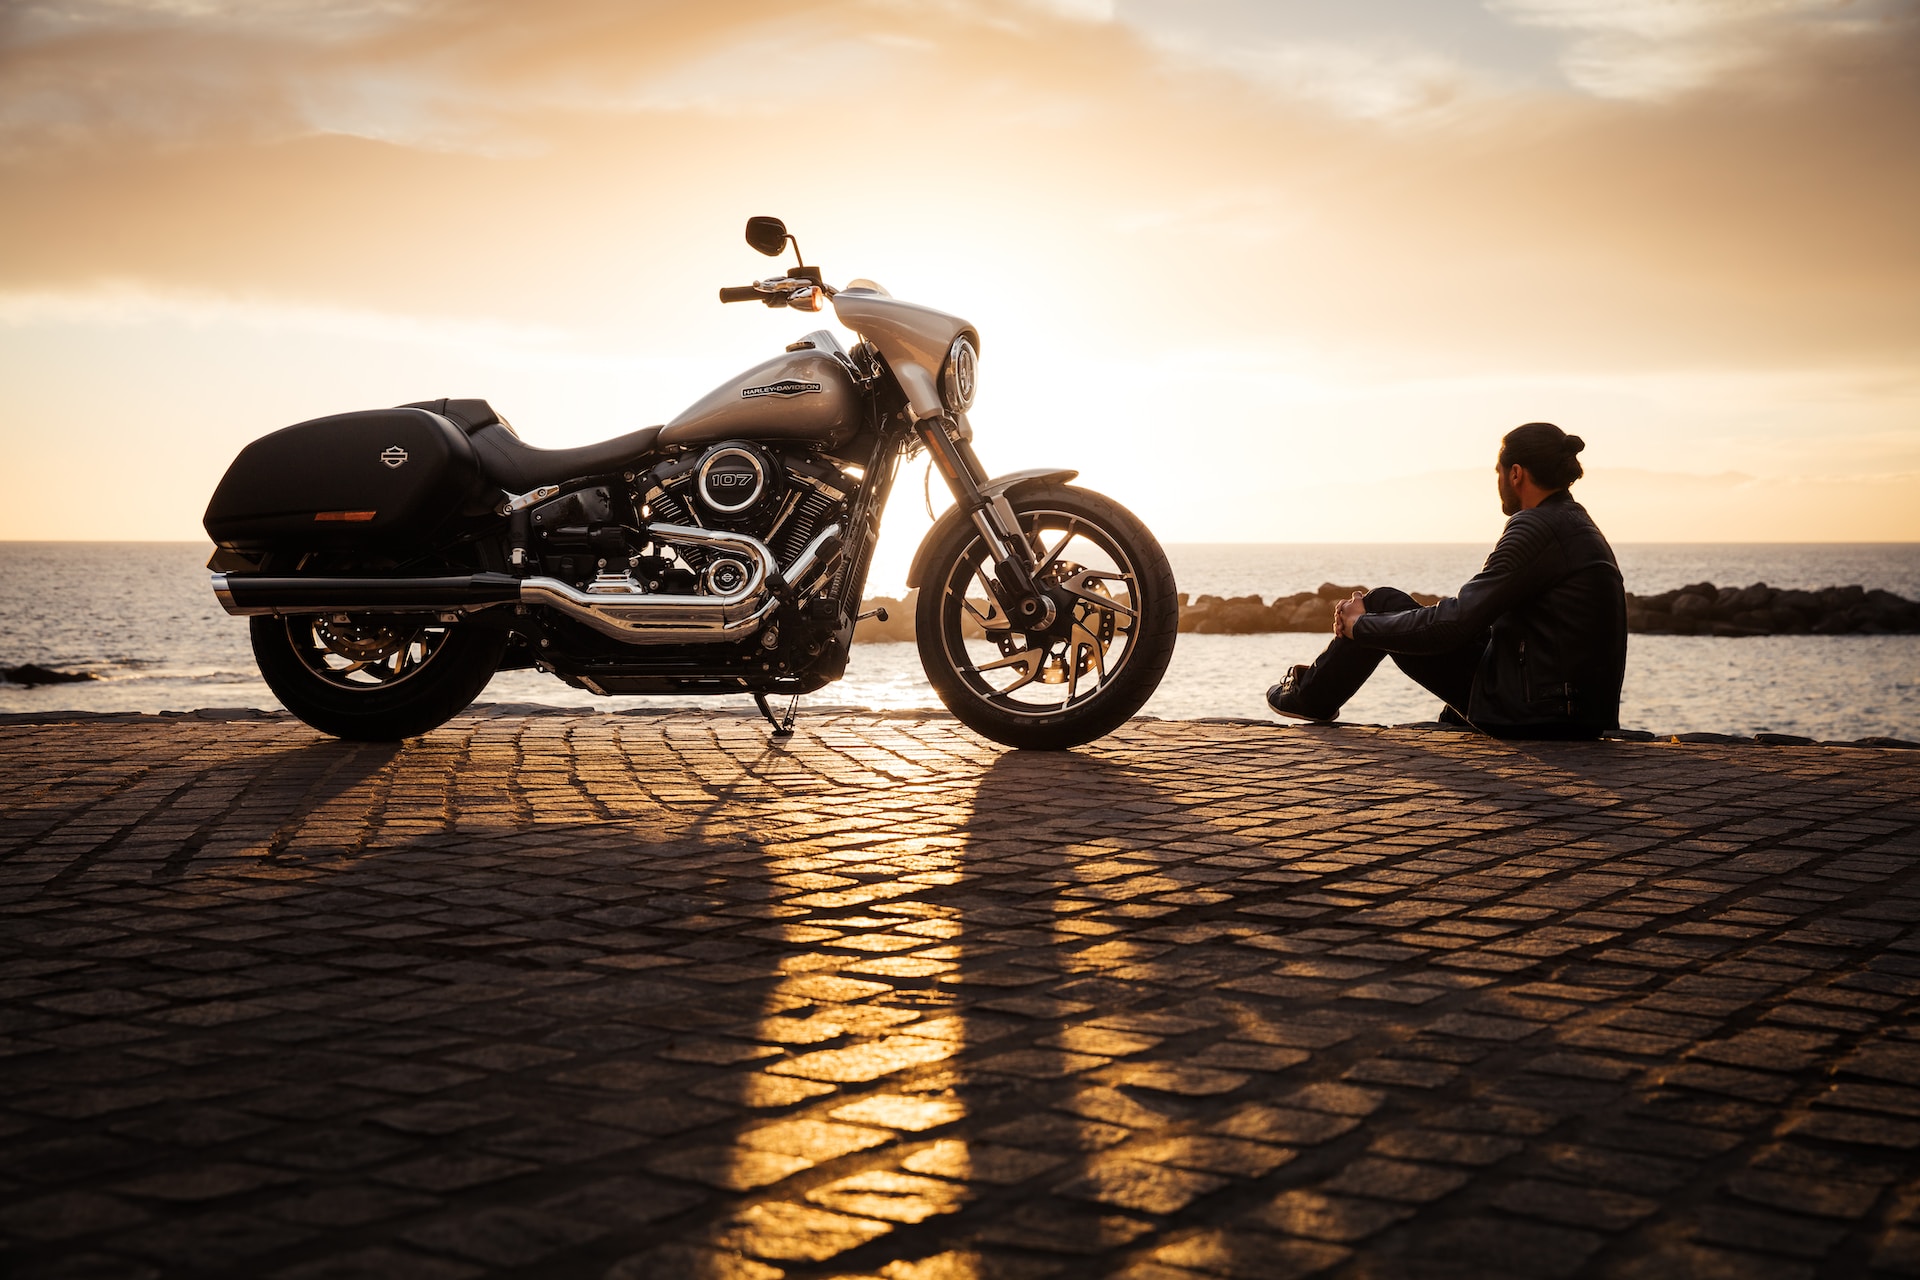 Les motos routièresCrédit Photo: Unsplash